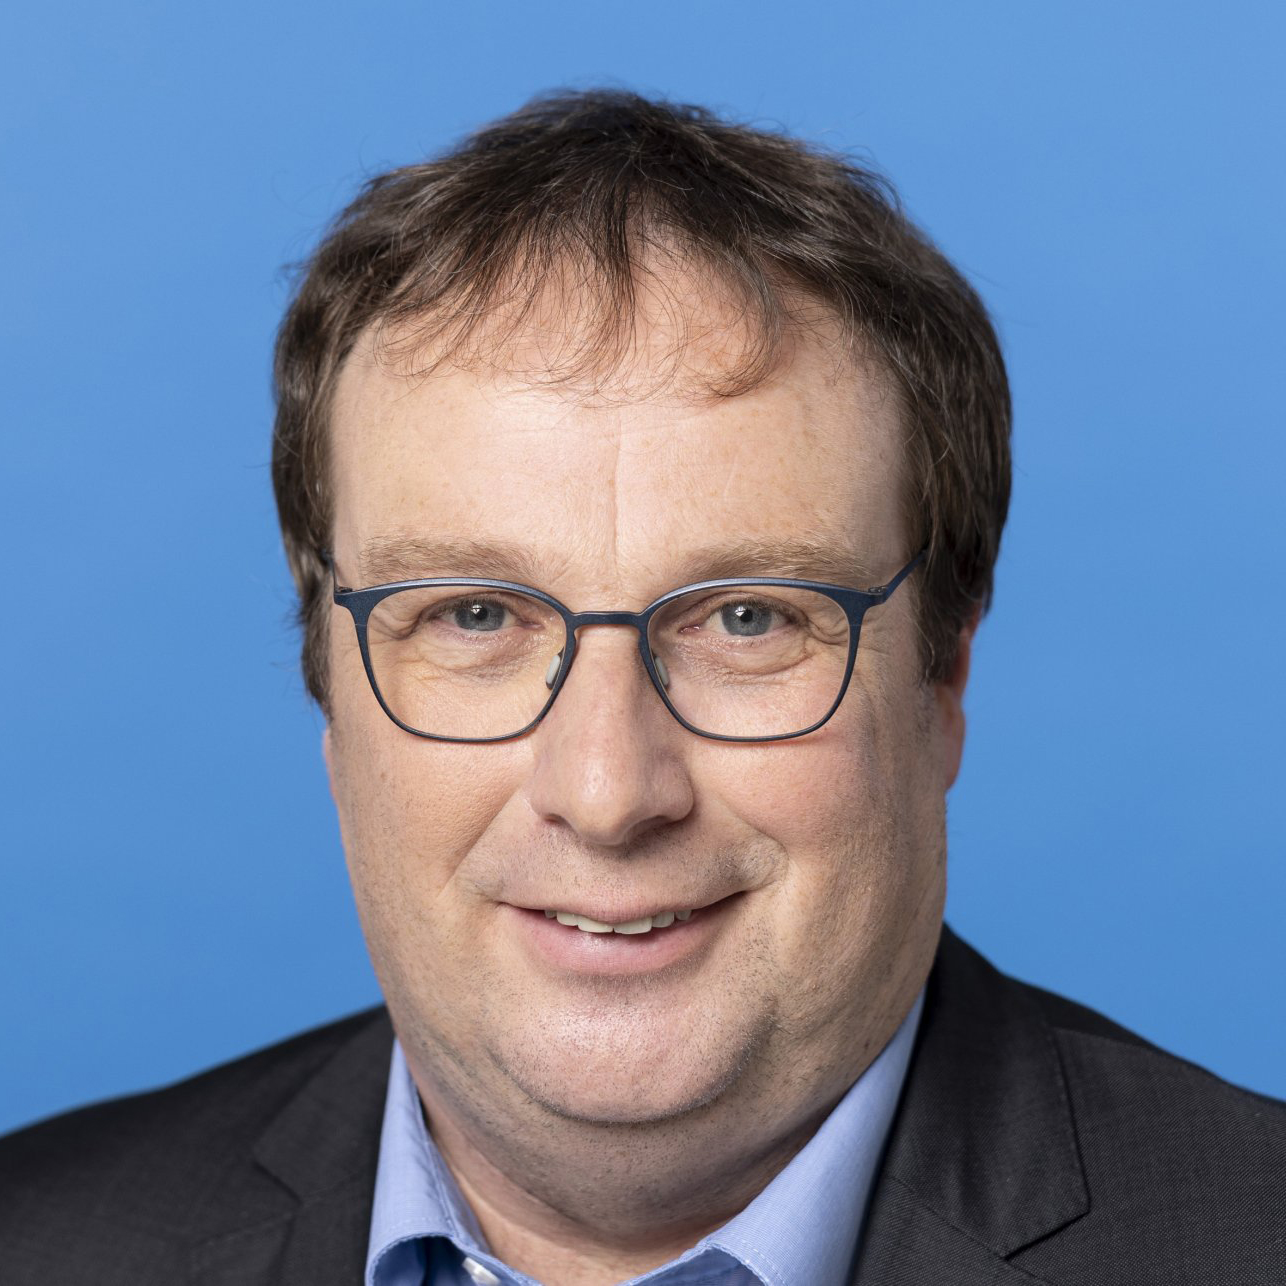 Oliver Krischer - Minister für Umwelt, Naturschutz und Verkehr des Landes Nordrhein-Westfalen